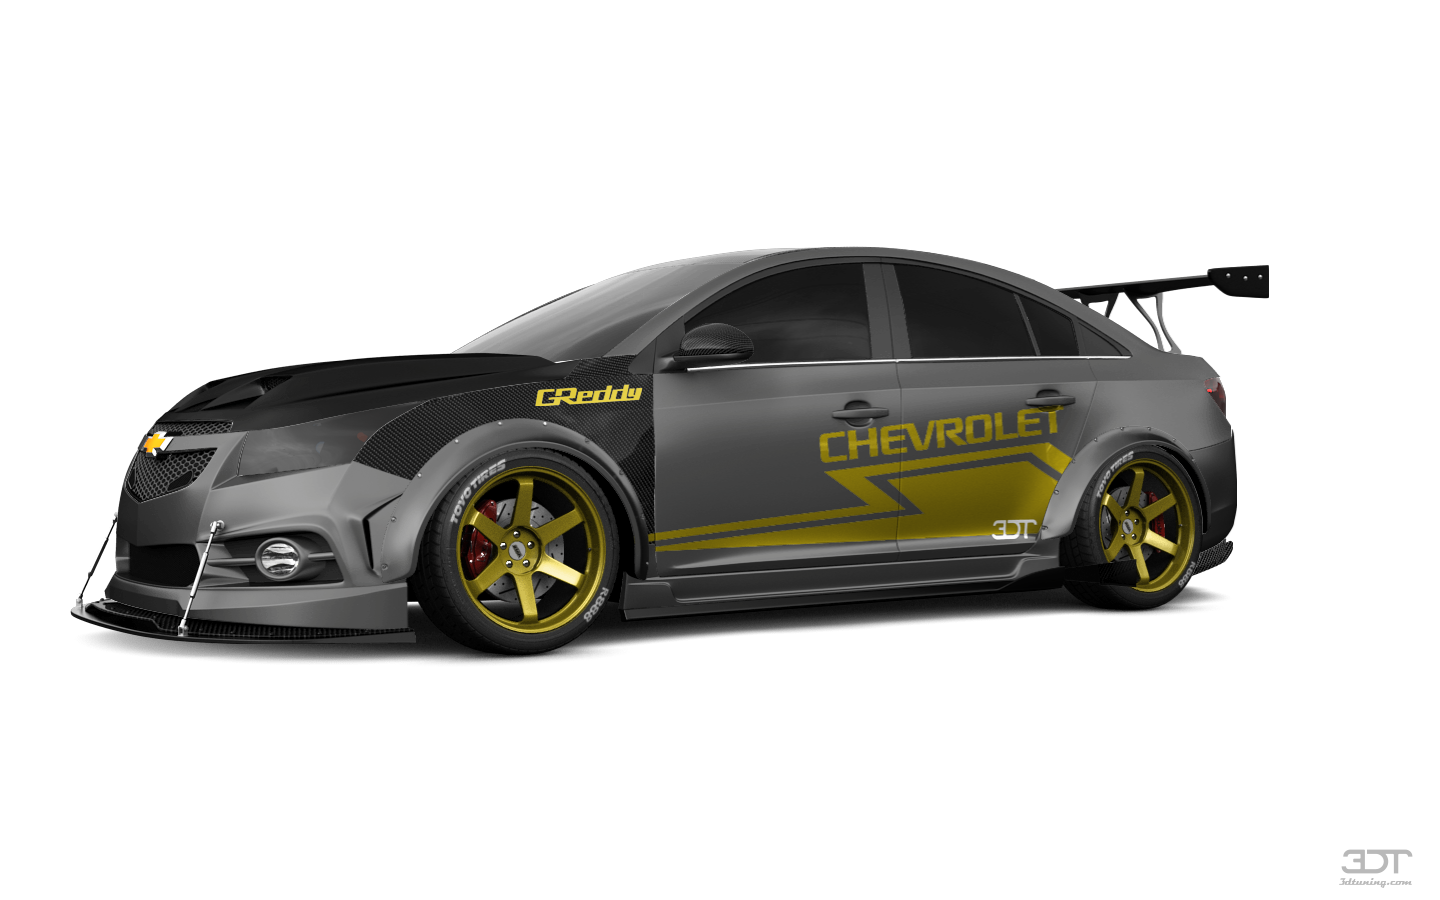 Chevrolet Cruze Sedan 2012 tuning